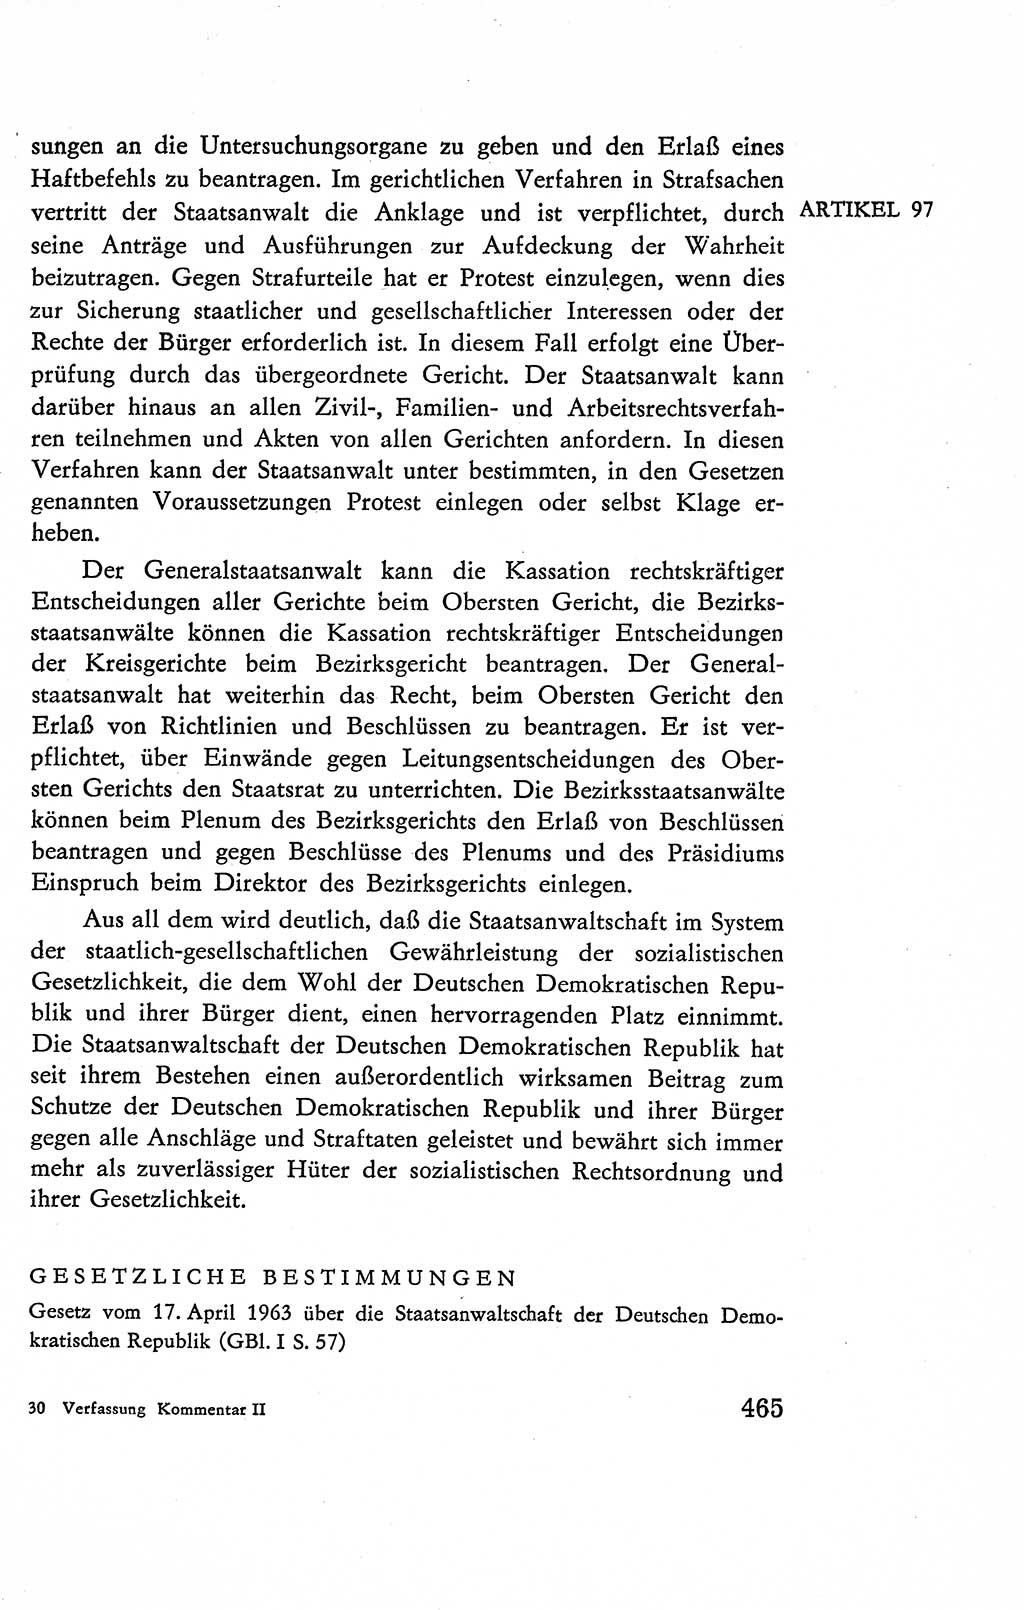 Verfassung der Deutschen Demokratischen Republik (DDR), Dokumente, Kommentar 1969, Band 2, Seite 465 (Verf. DDR Dok. Komm. 1969, Bd. 2, S. 465)